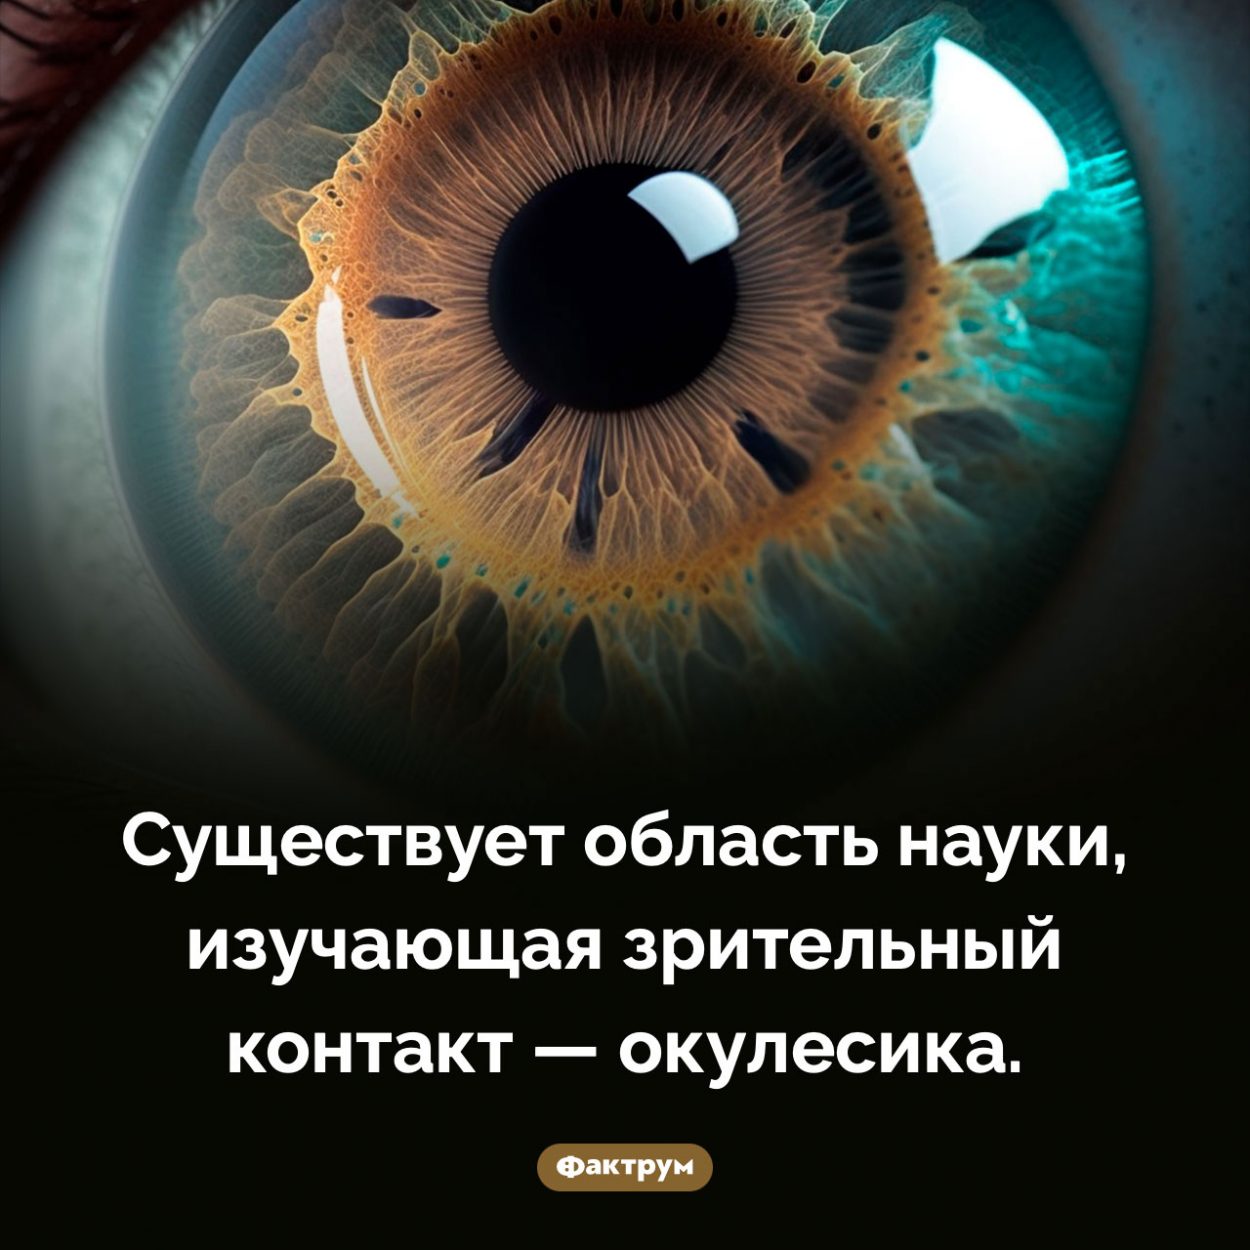 Наука, изучающая зрительный контакт. Существует область науки, изучающая зрительный контакт — окулесика.